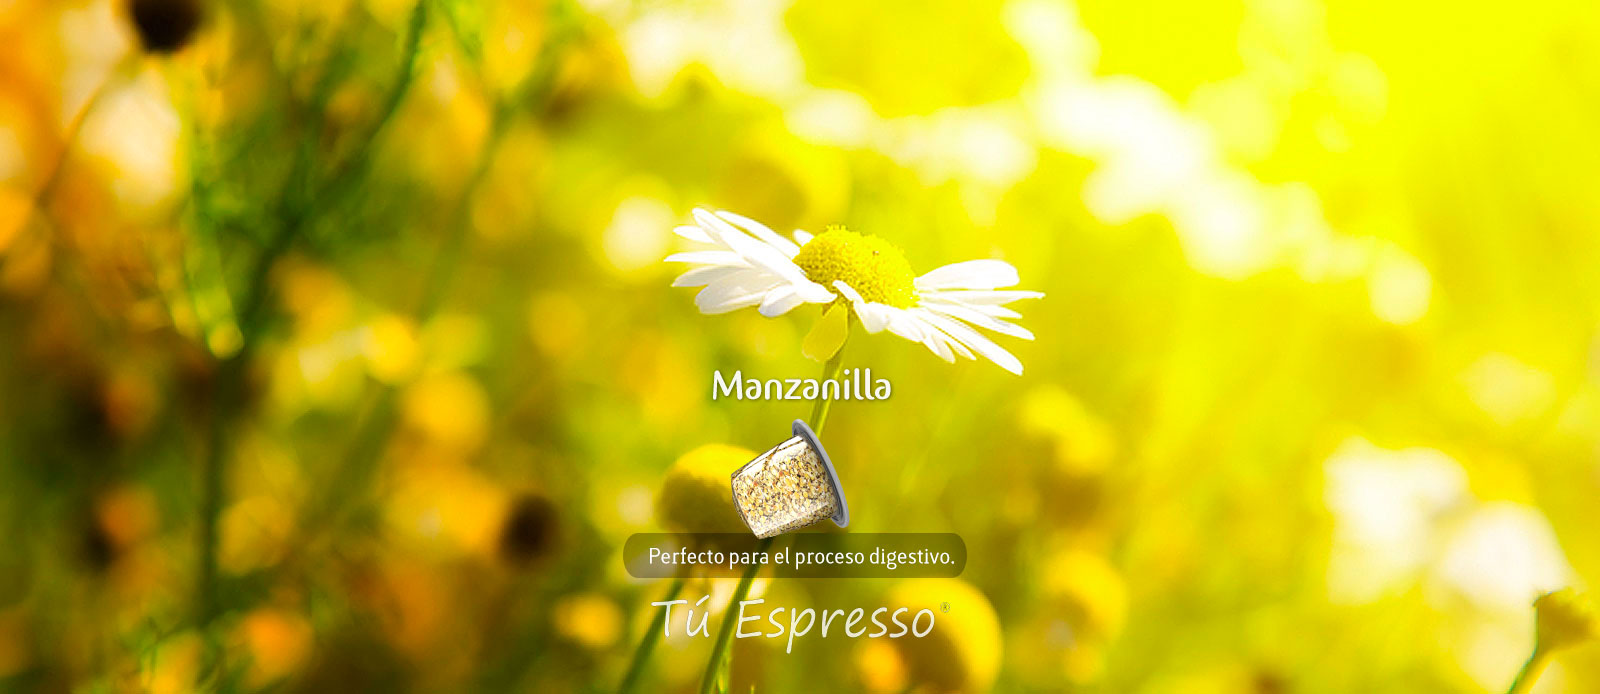 Manzanilla cápsula de café compatible te tu espresso